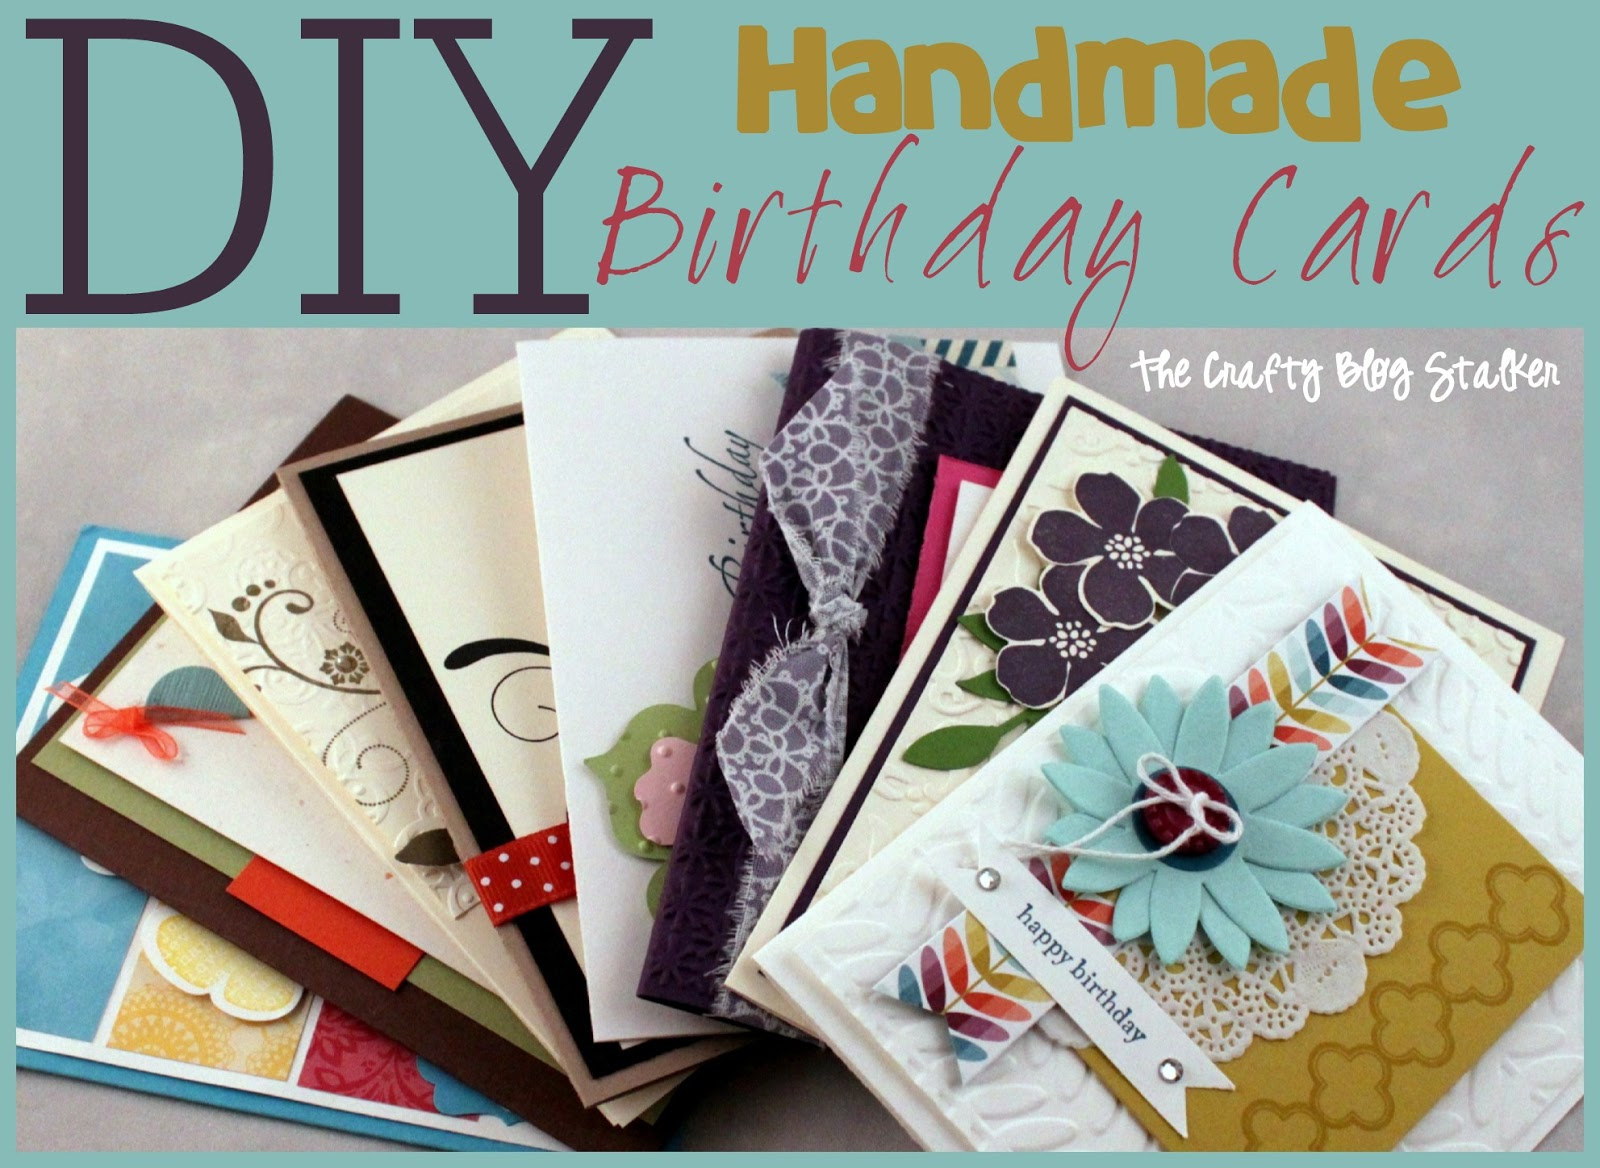 Ideas For Handmade Birthday Cards Handmade Birthday Card Ideas The Crafty Blog Stalker